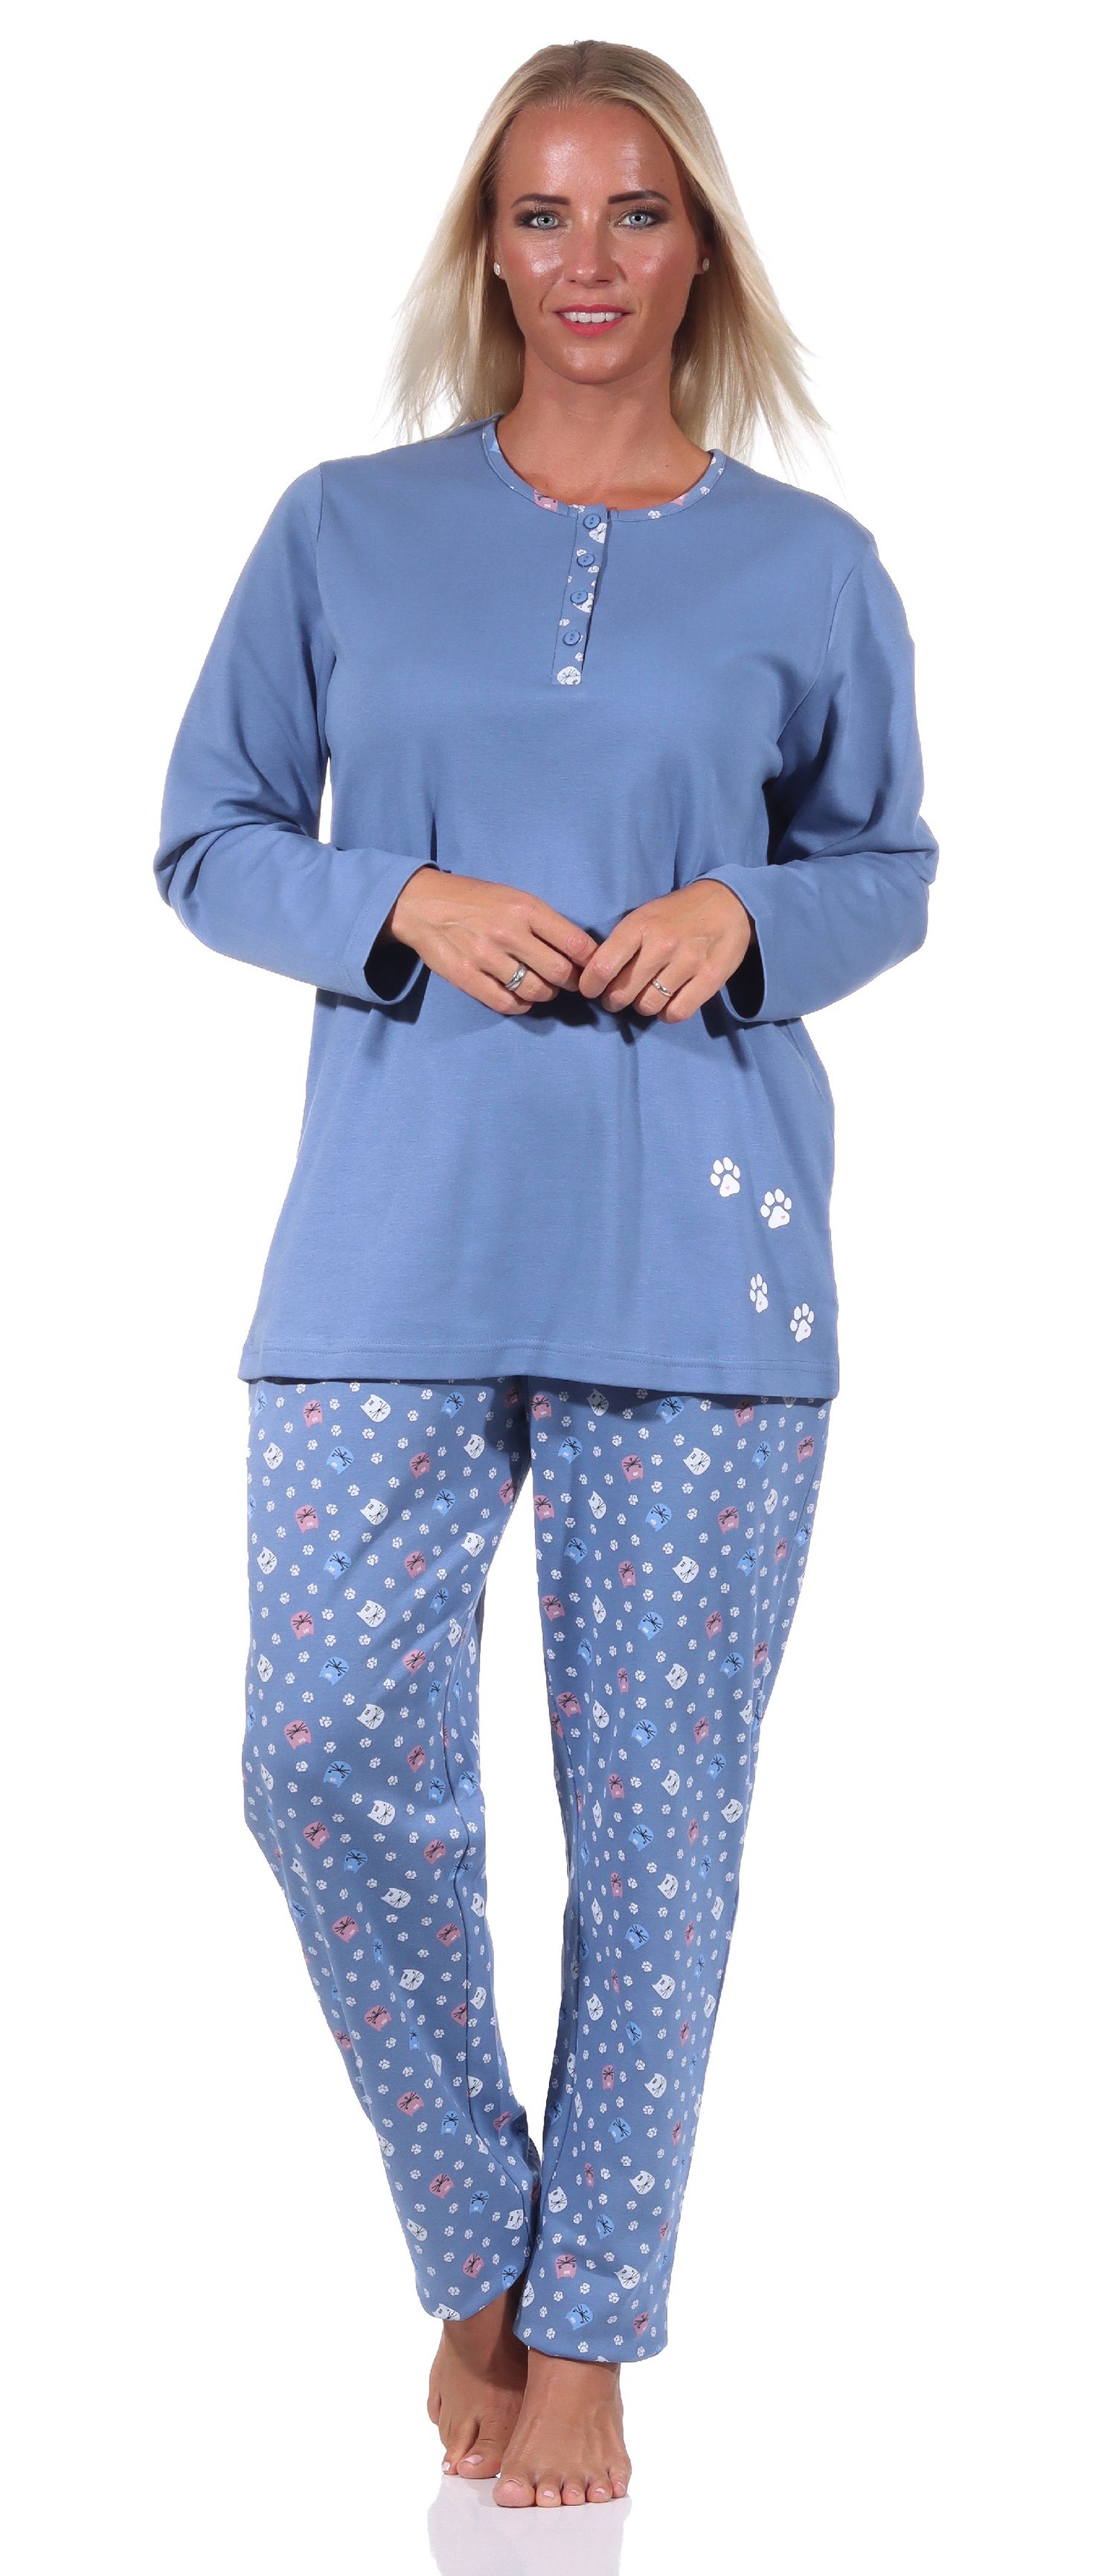 Damen Pyjama langarm Schlafanzug in Kuschel Interlock Qualität mit niedlichem Tier Motiv